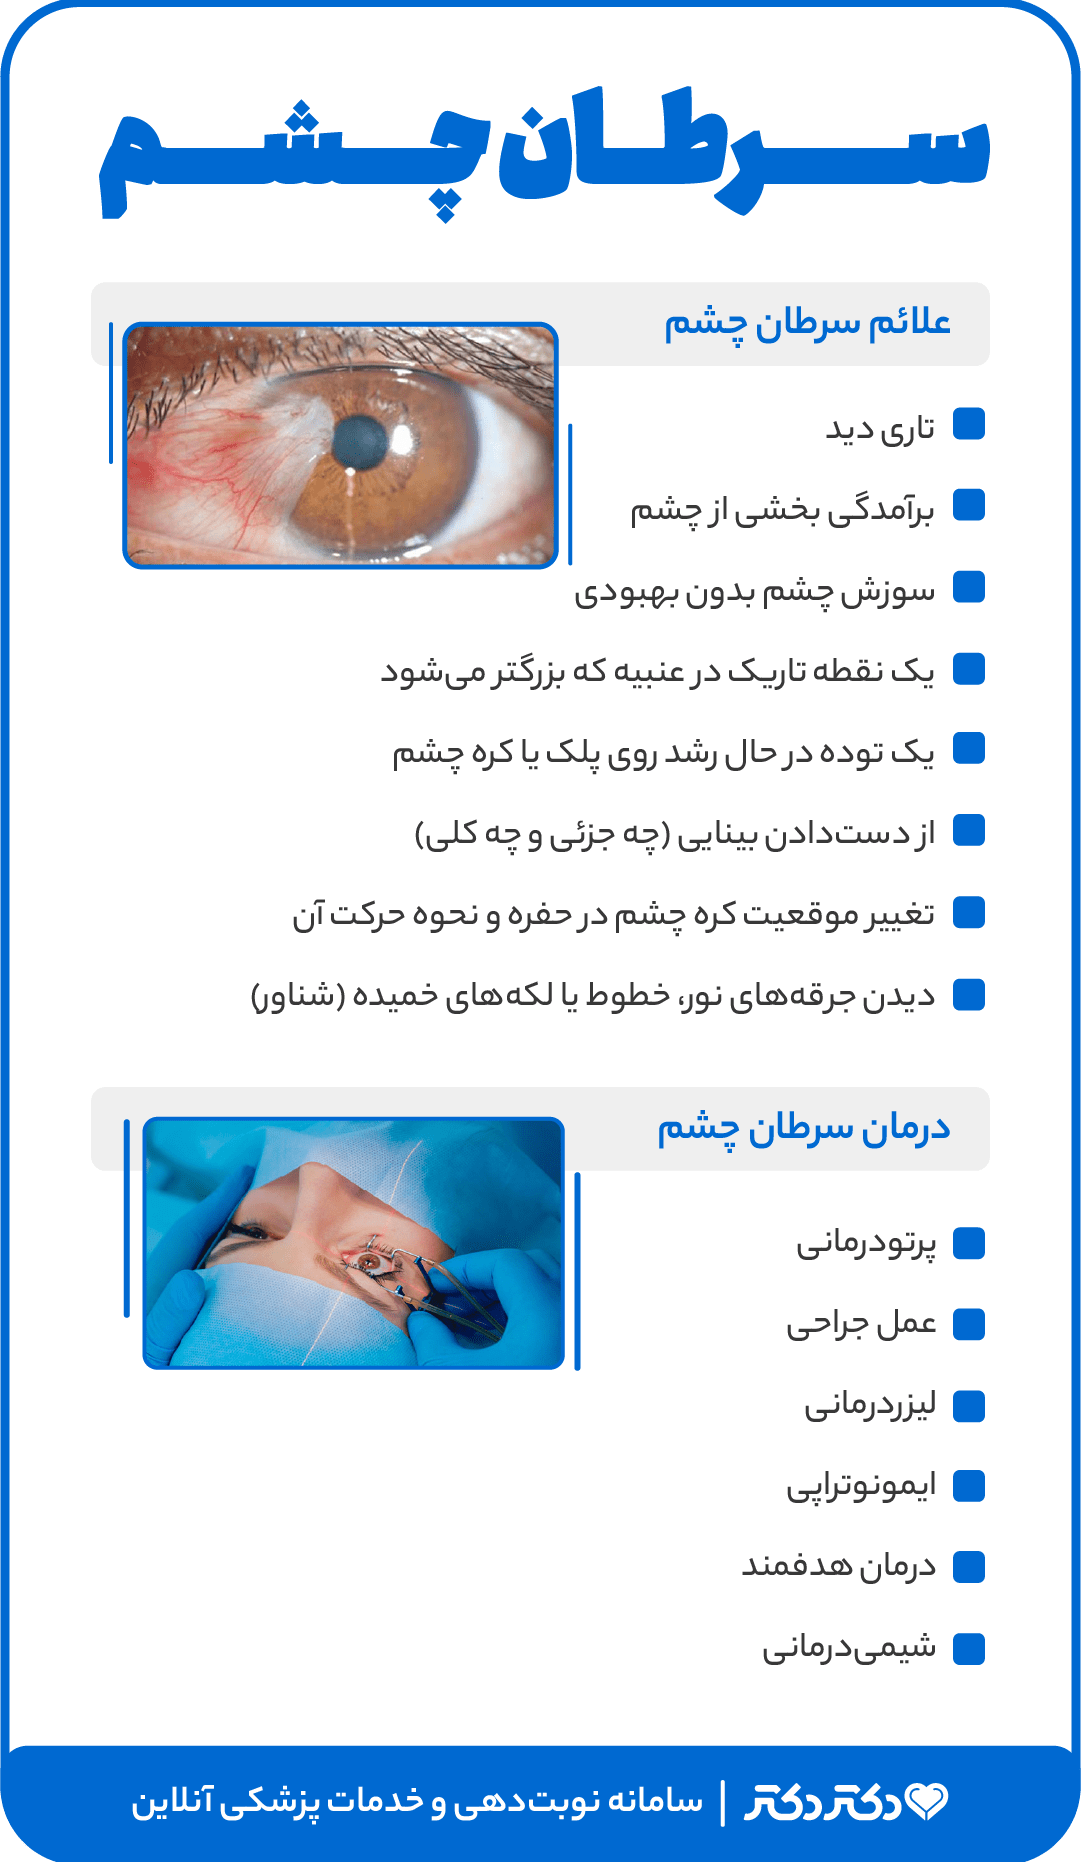 اینفوگرافی سرطان چشم